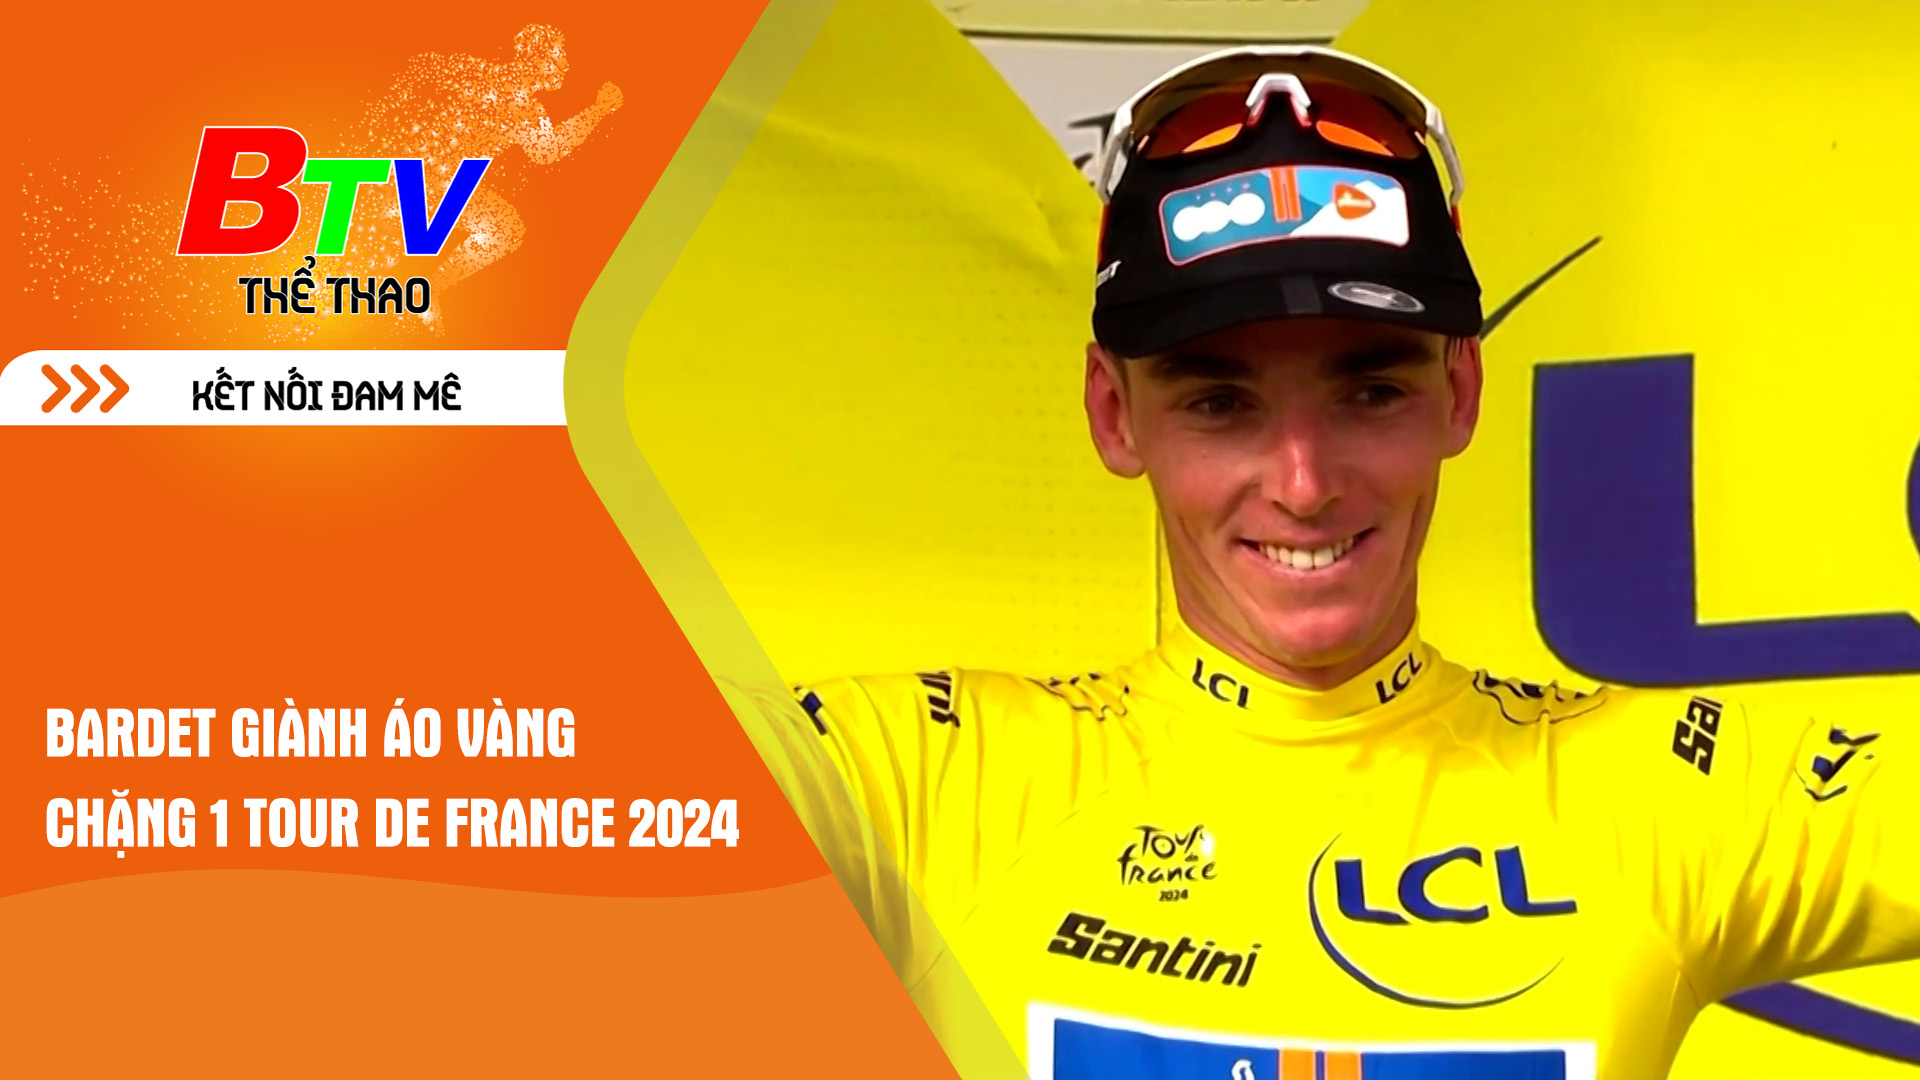 Bardet giành áo vàng chặng 1 Tour de France | Tin Thể thao 24h